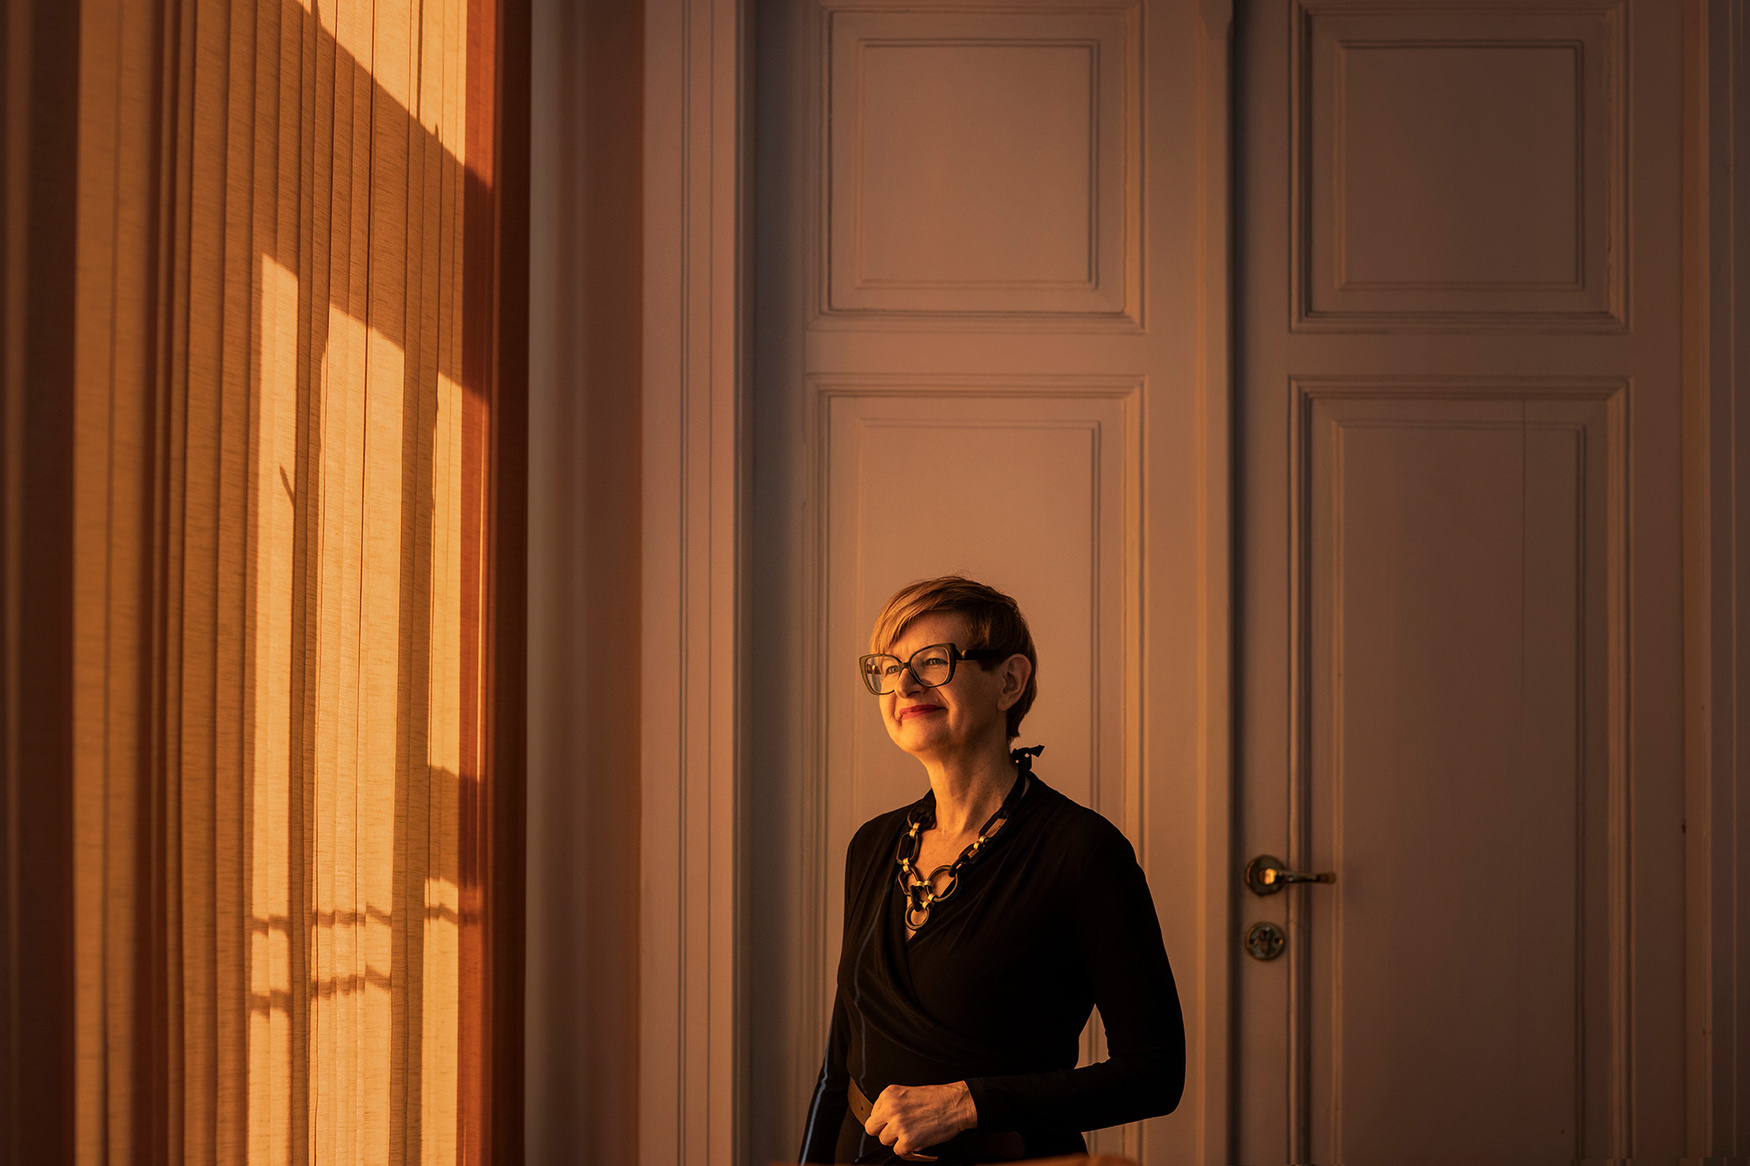 Prorektor Agata Kwiatkowska - Lubańska pozuje w dziennych świetle, przy drzwiach